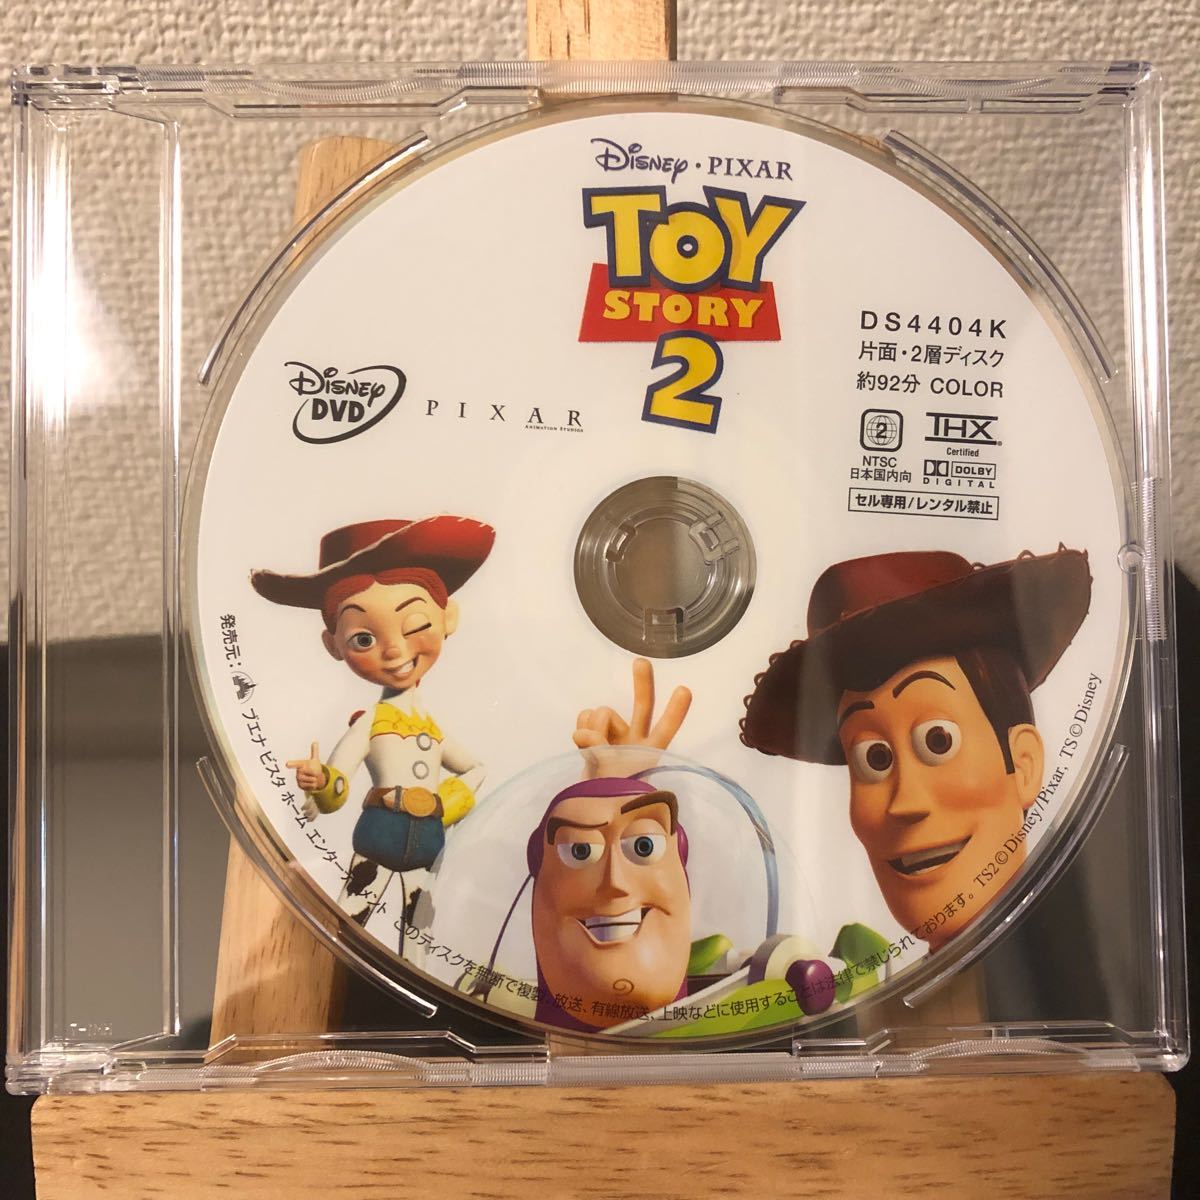 トイ・ストーリー2 ピクサー  ディズニー  pixar disney 2 トイストーリー  トイ・ストーリー DVD